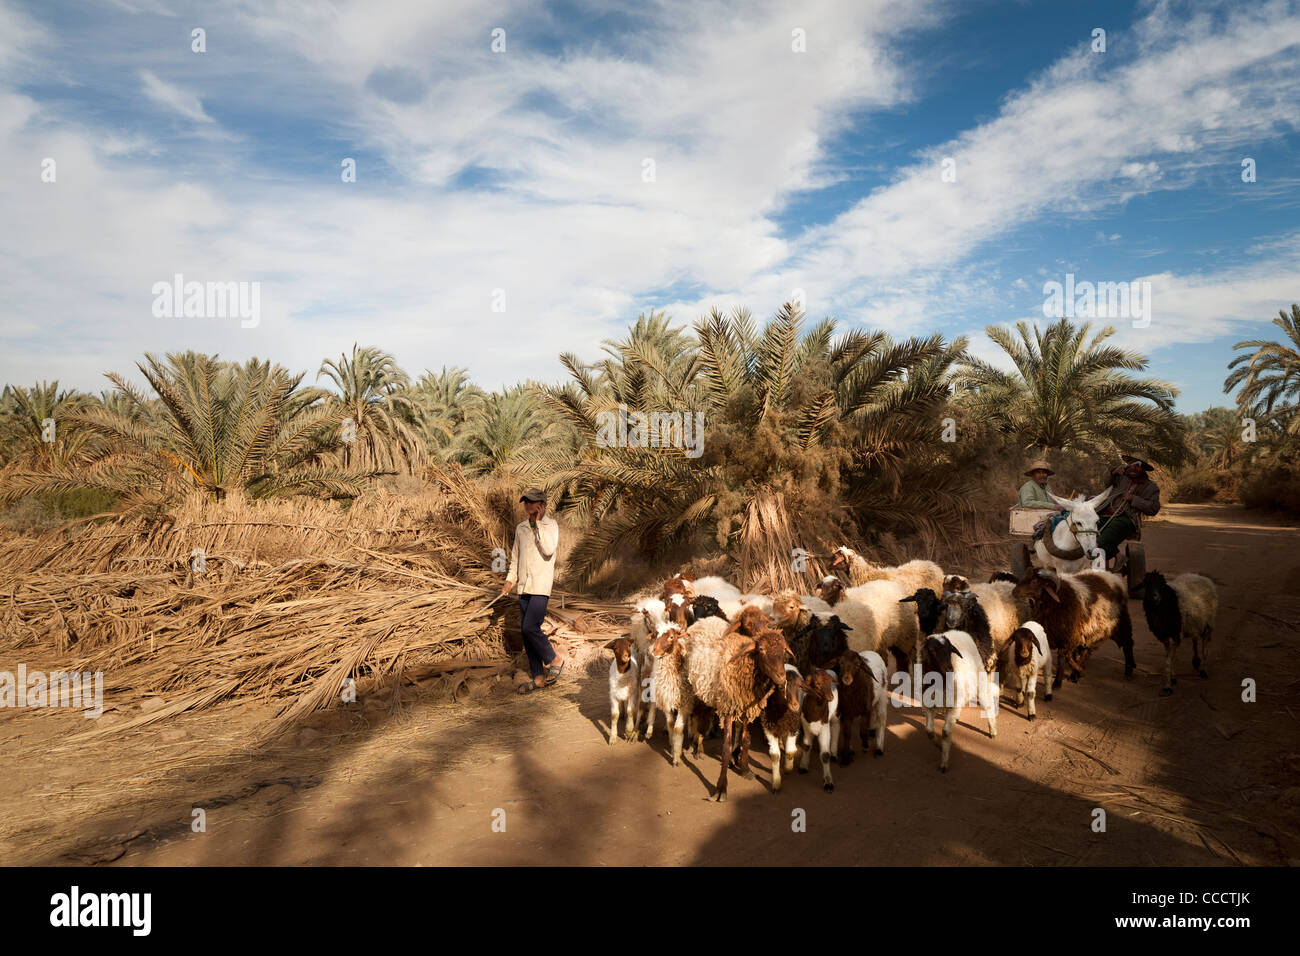 Mann auf Wagen, gezogen von Esel mit seiner Herde von Schafen und Ziegen in der Oase Dakhla, westliche Wüste Ägypten Stockfoto